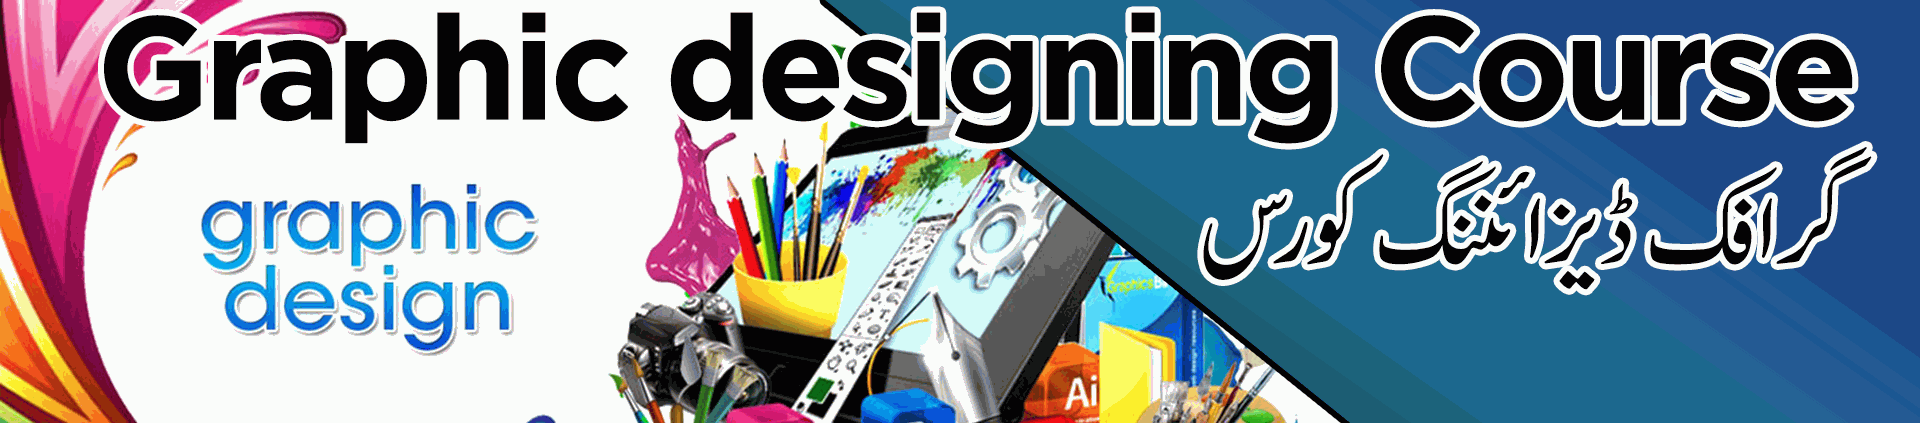 Graphic designing course multan  Graphic designing course training